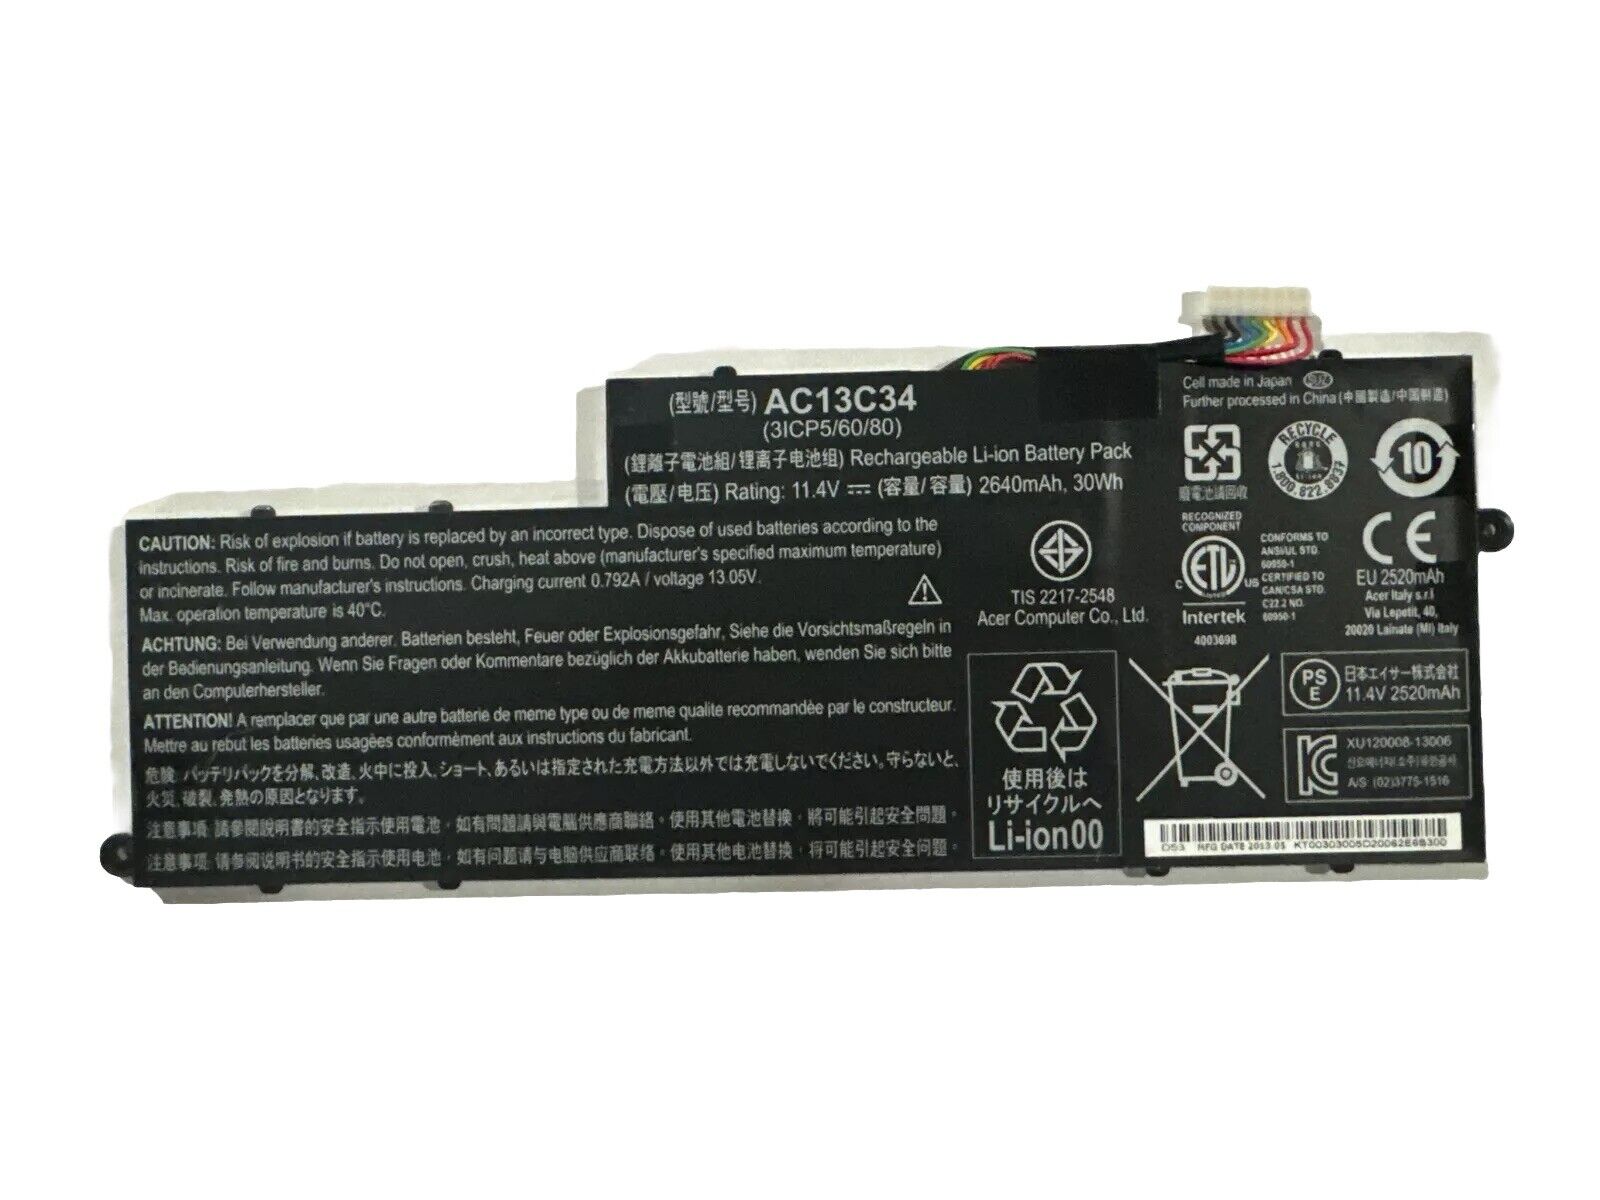 Acer 11.4V Li-Polymer Battery for Laptop - 2640mAh, AC13C34